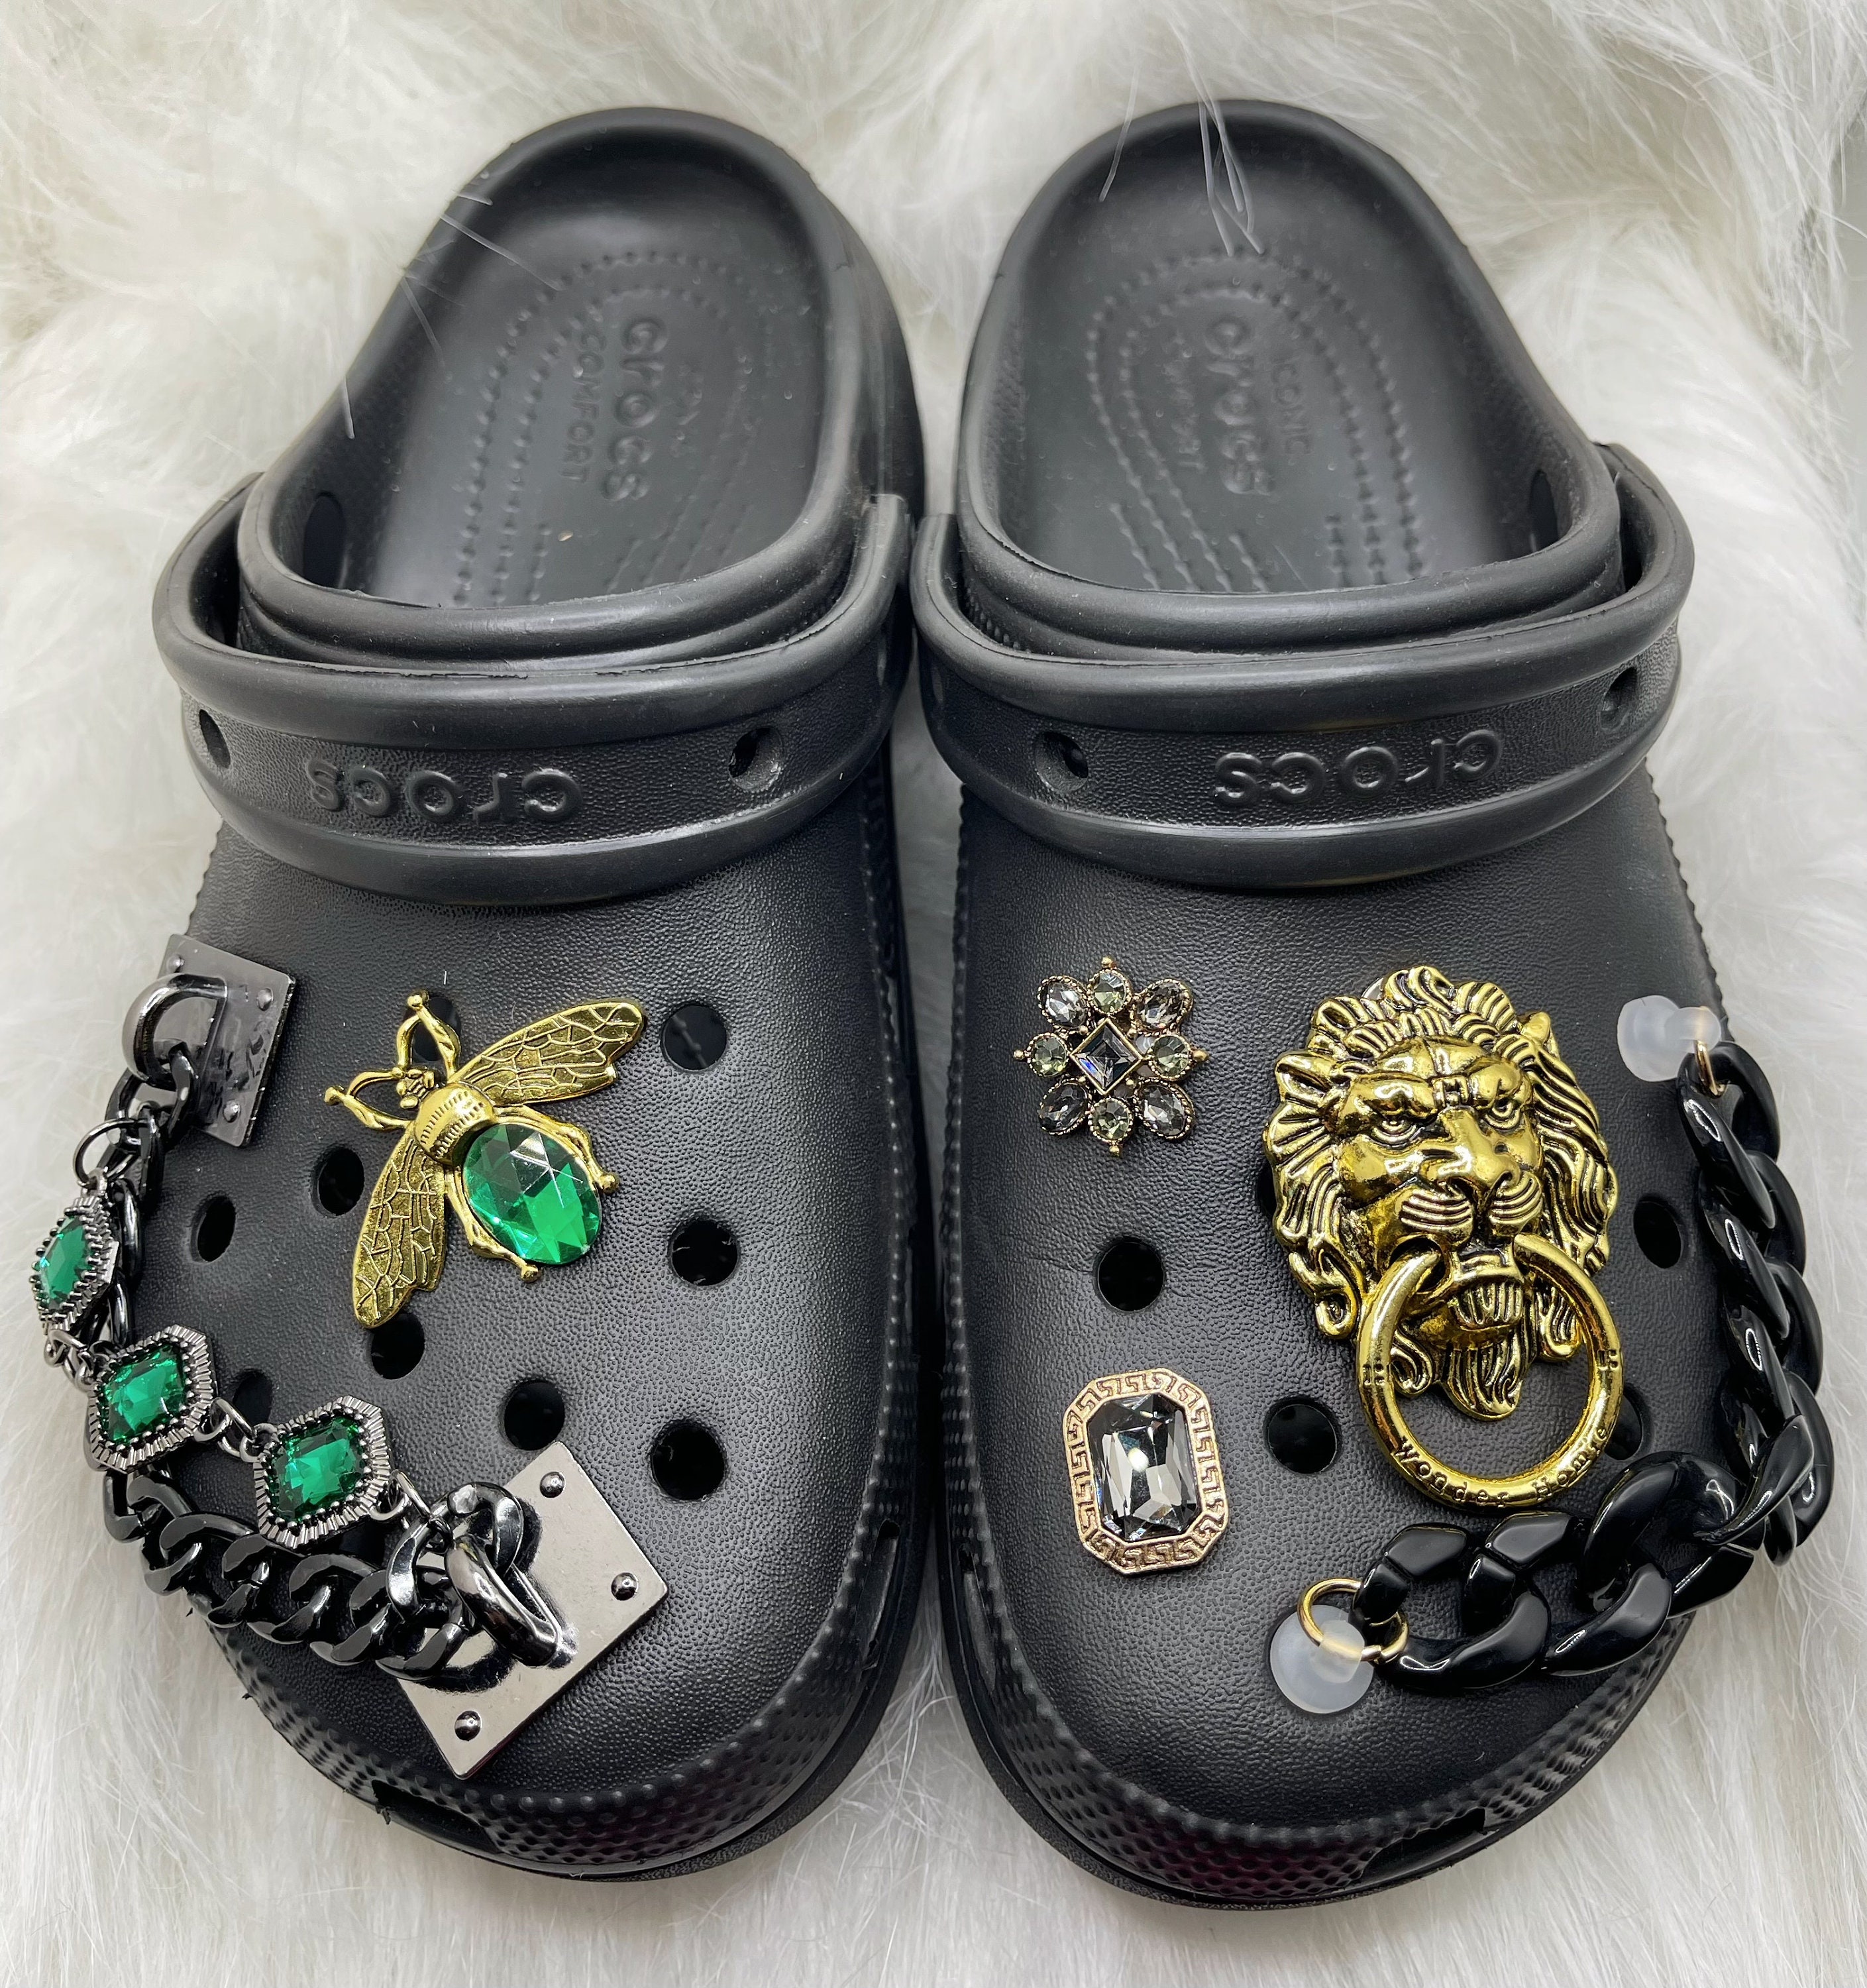 DIY Shoe Charms for Crocs Punk Metal Rivet Designers Chains Charms Spikes  Clogs Buckle Decorations Hip Hop Shoe Accessories